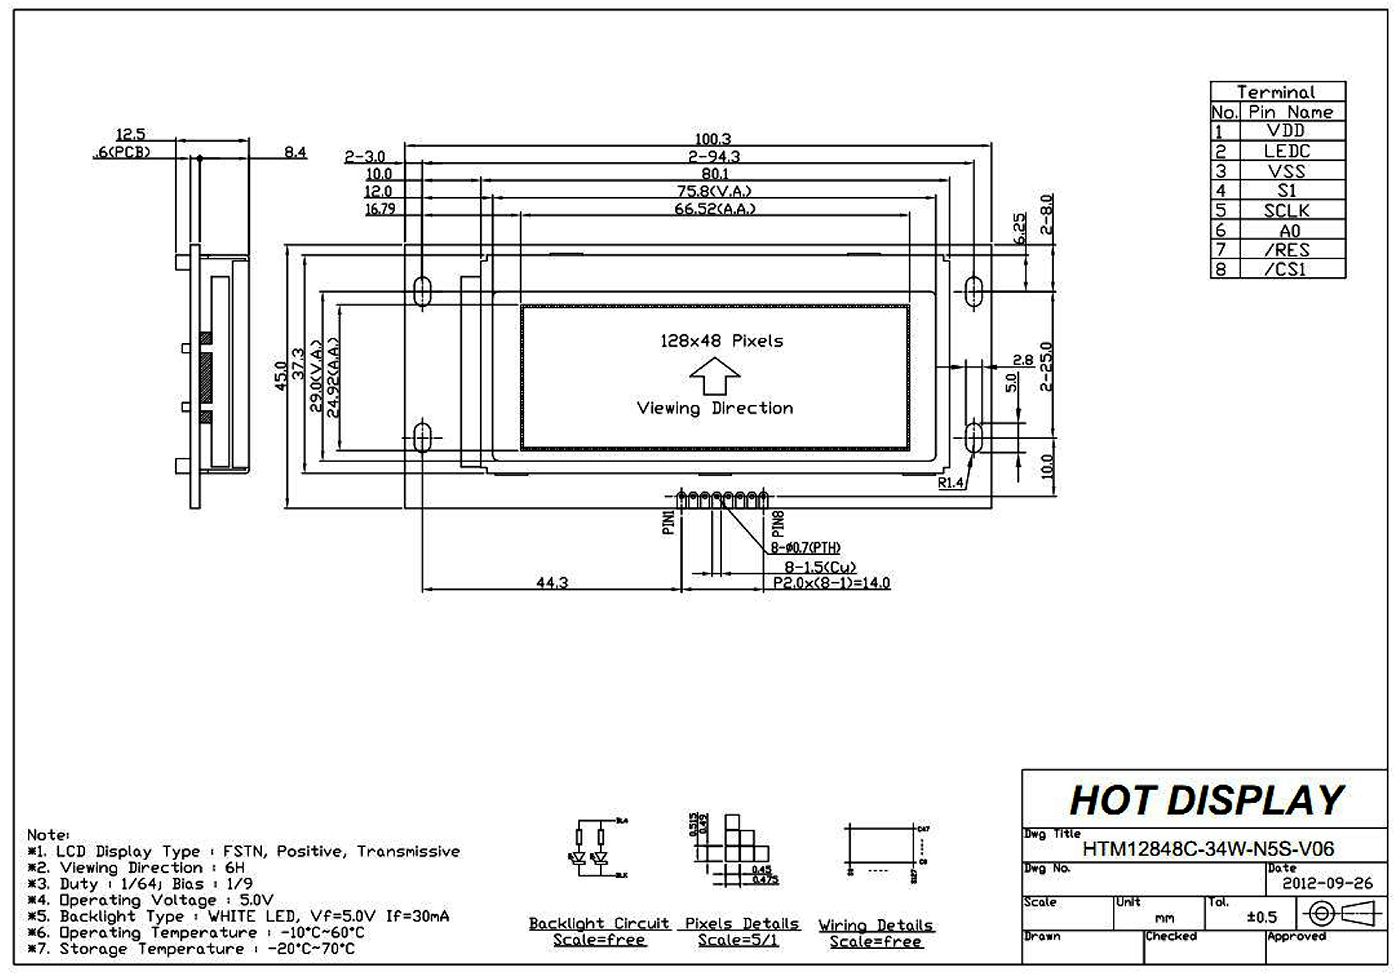 HTM12848C-34W-N5S-V06 Manual_04.jpg